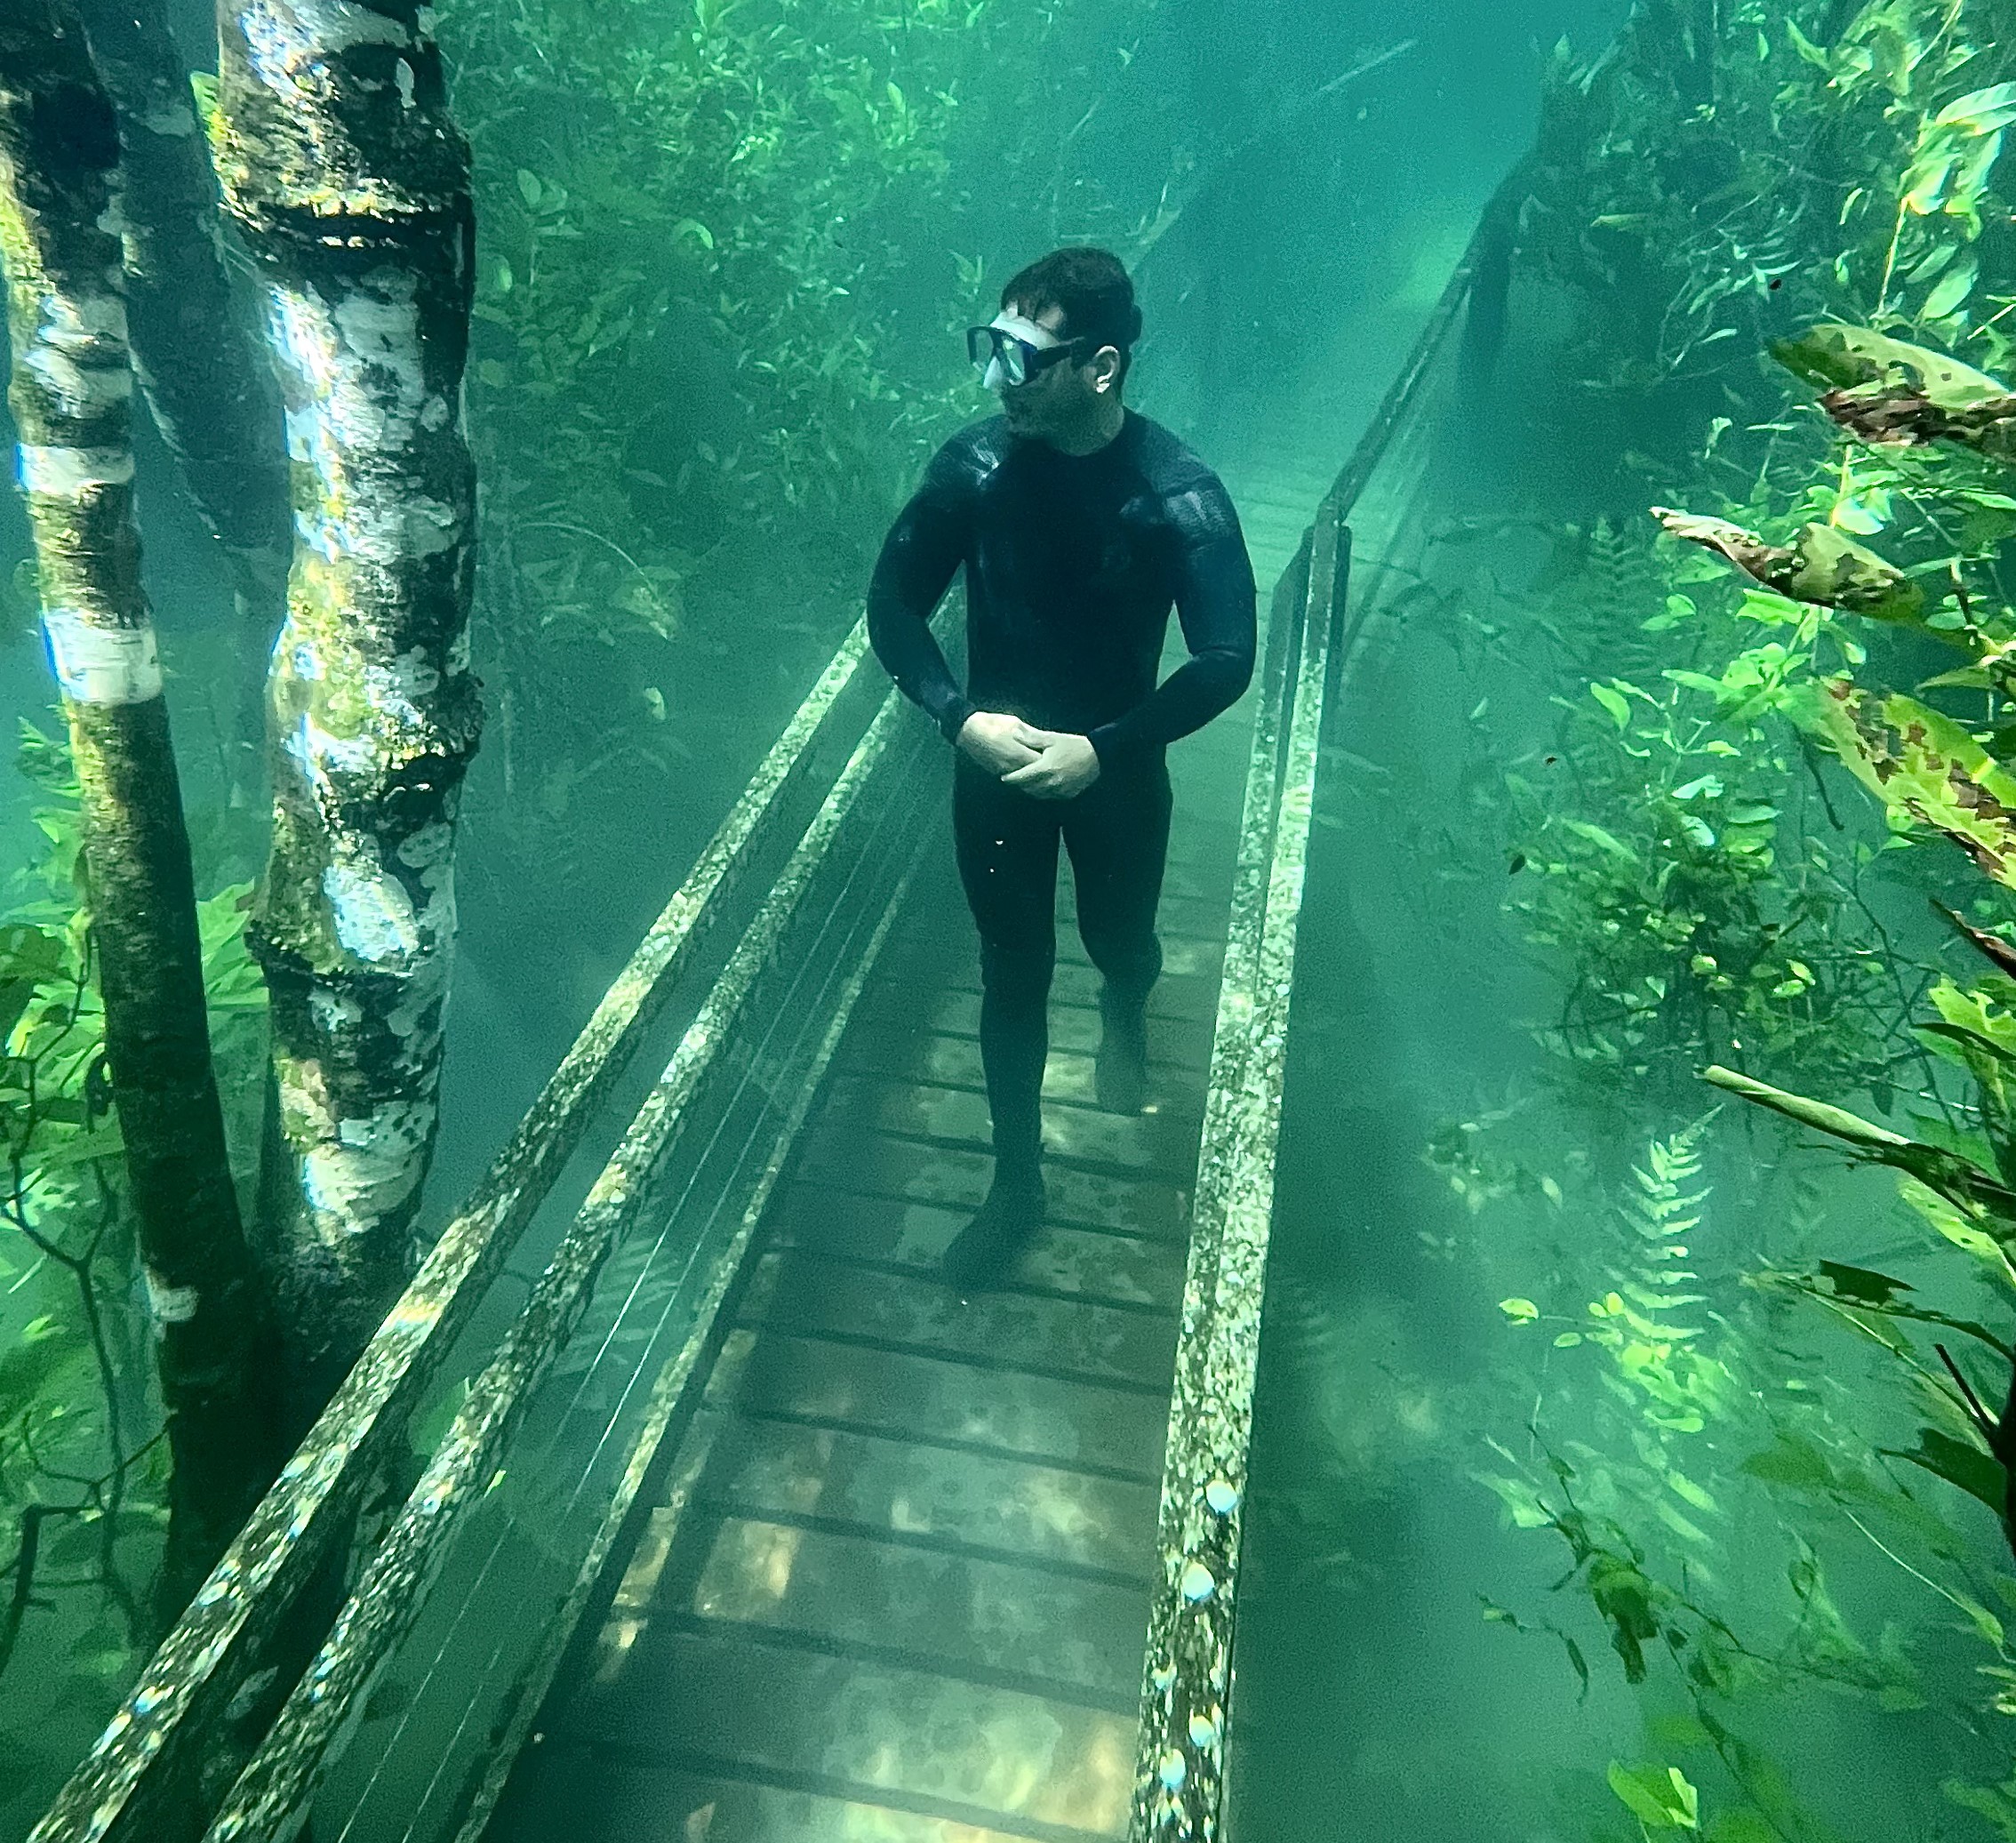 Turista caminha na trilha submersa e com águas cristalinas no Recanto Ecológico Rio da Prata